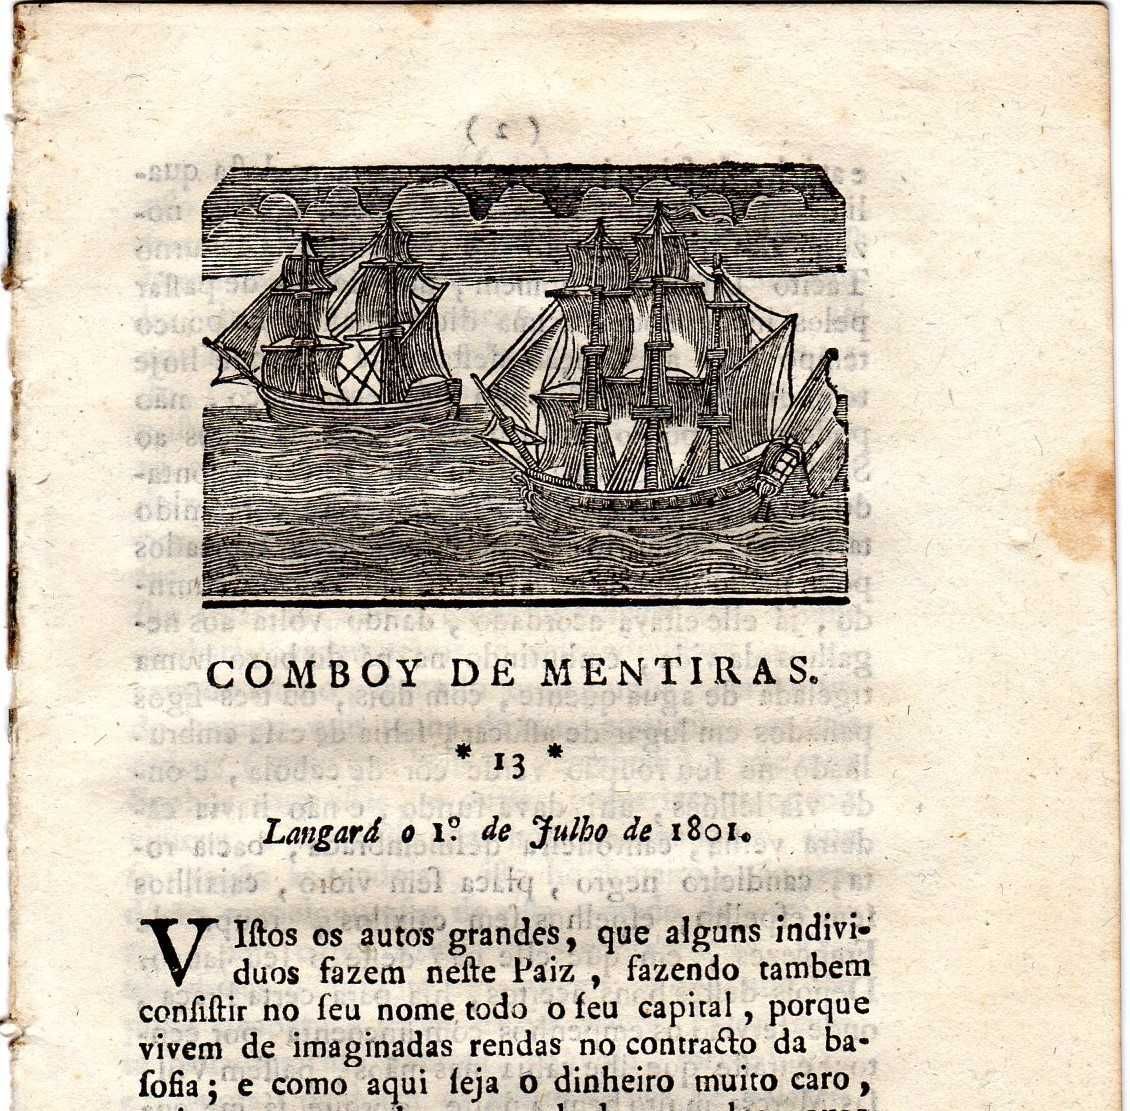 RARA GAZETA SATÍRICA "Comboy de Mentiras" de 1801